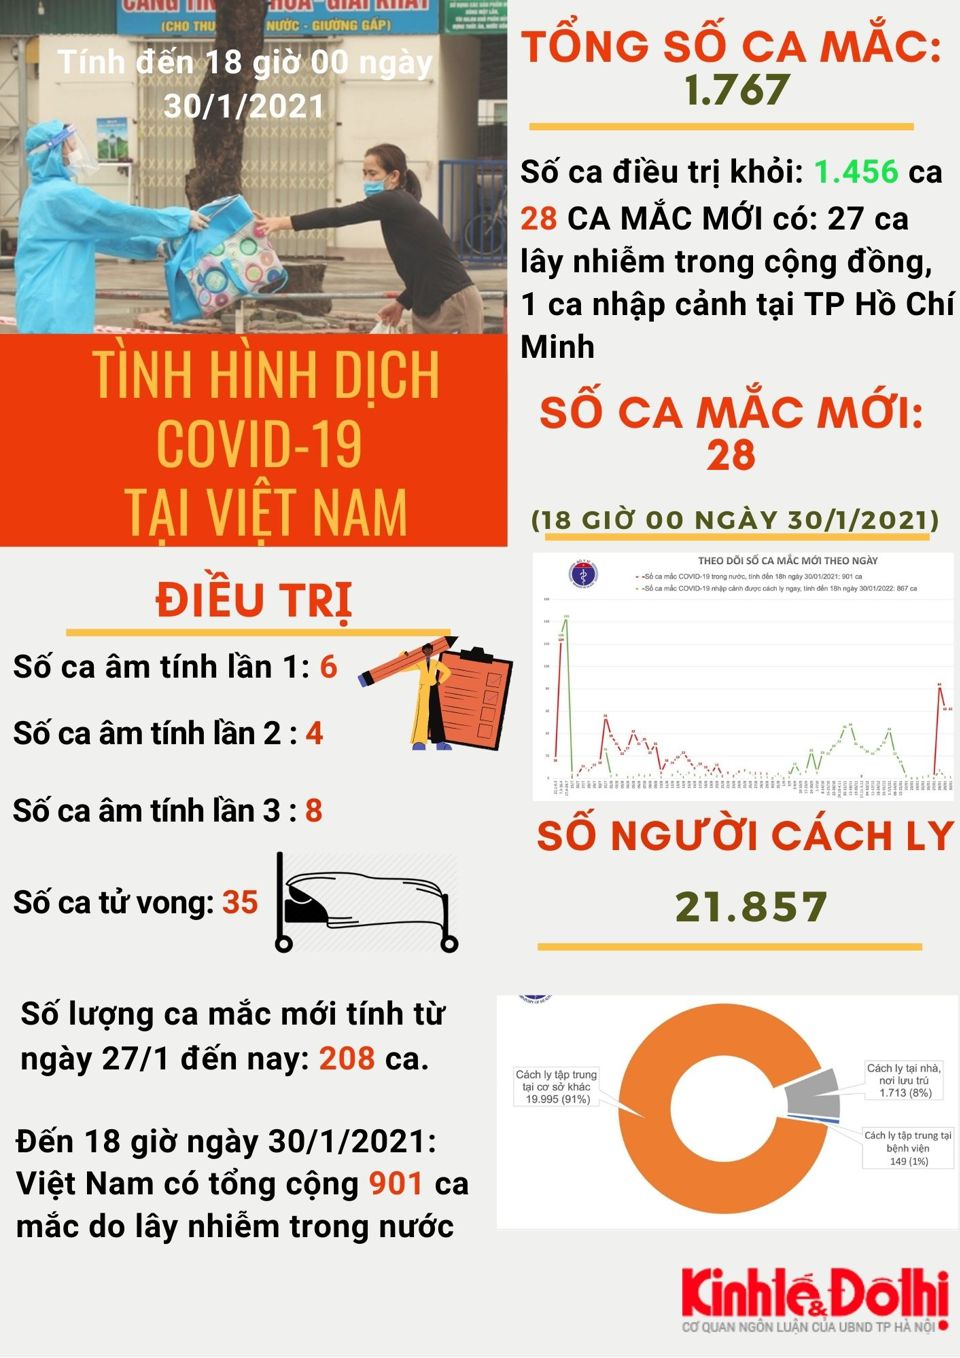 [Infographic] Việt Nam có 1767 người mắc Covid-19 - Ảnh 1